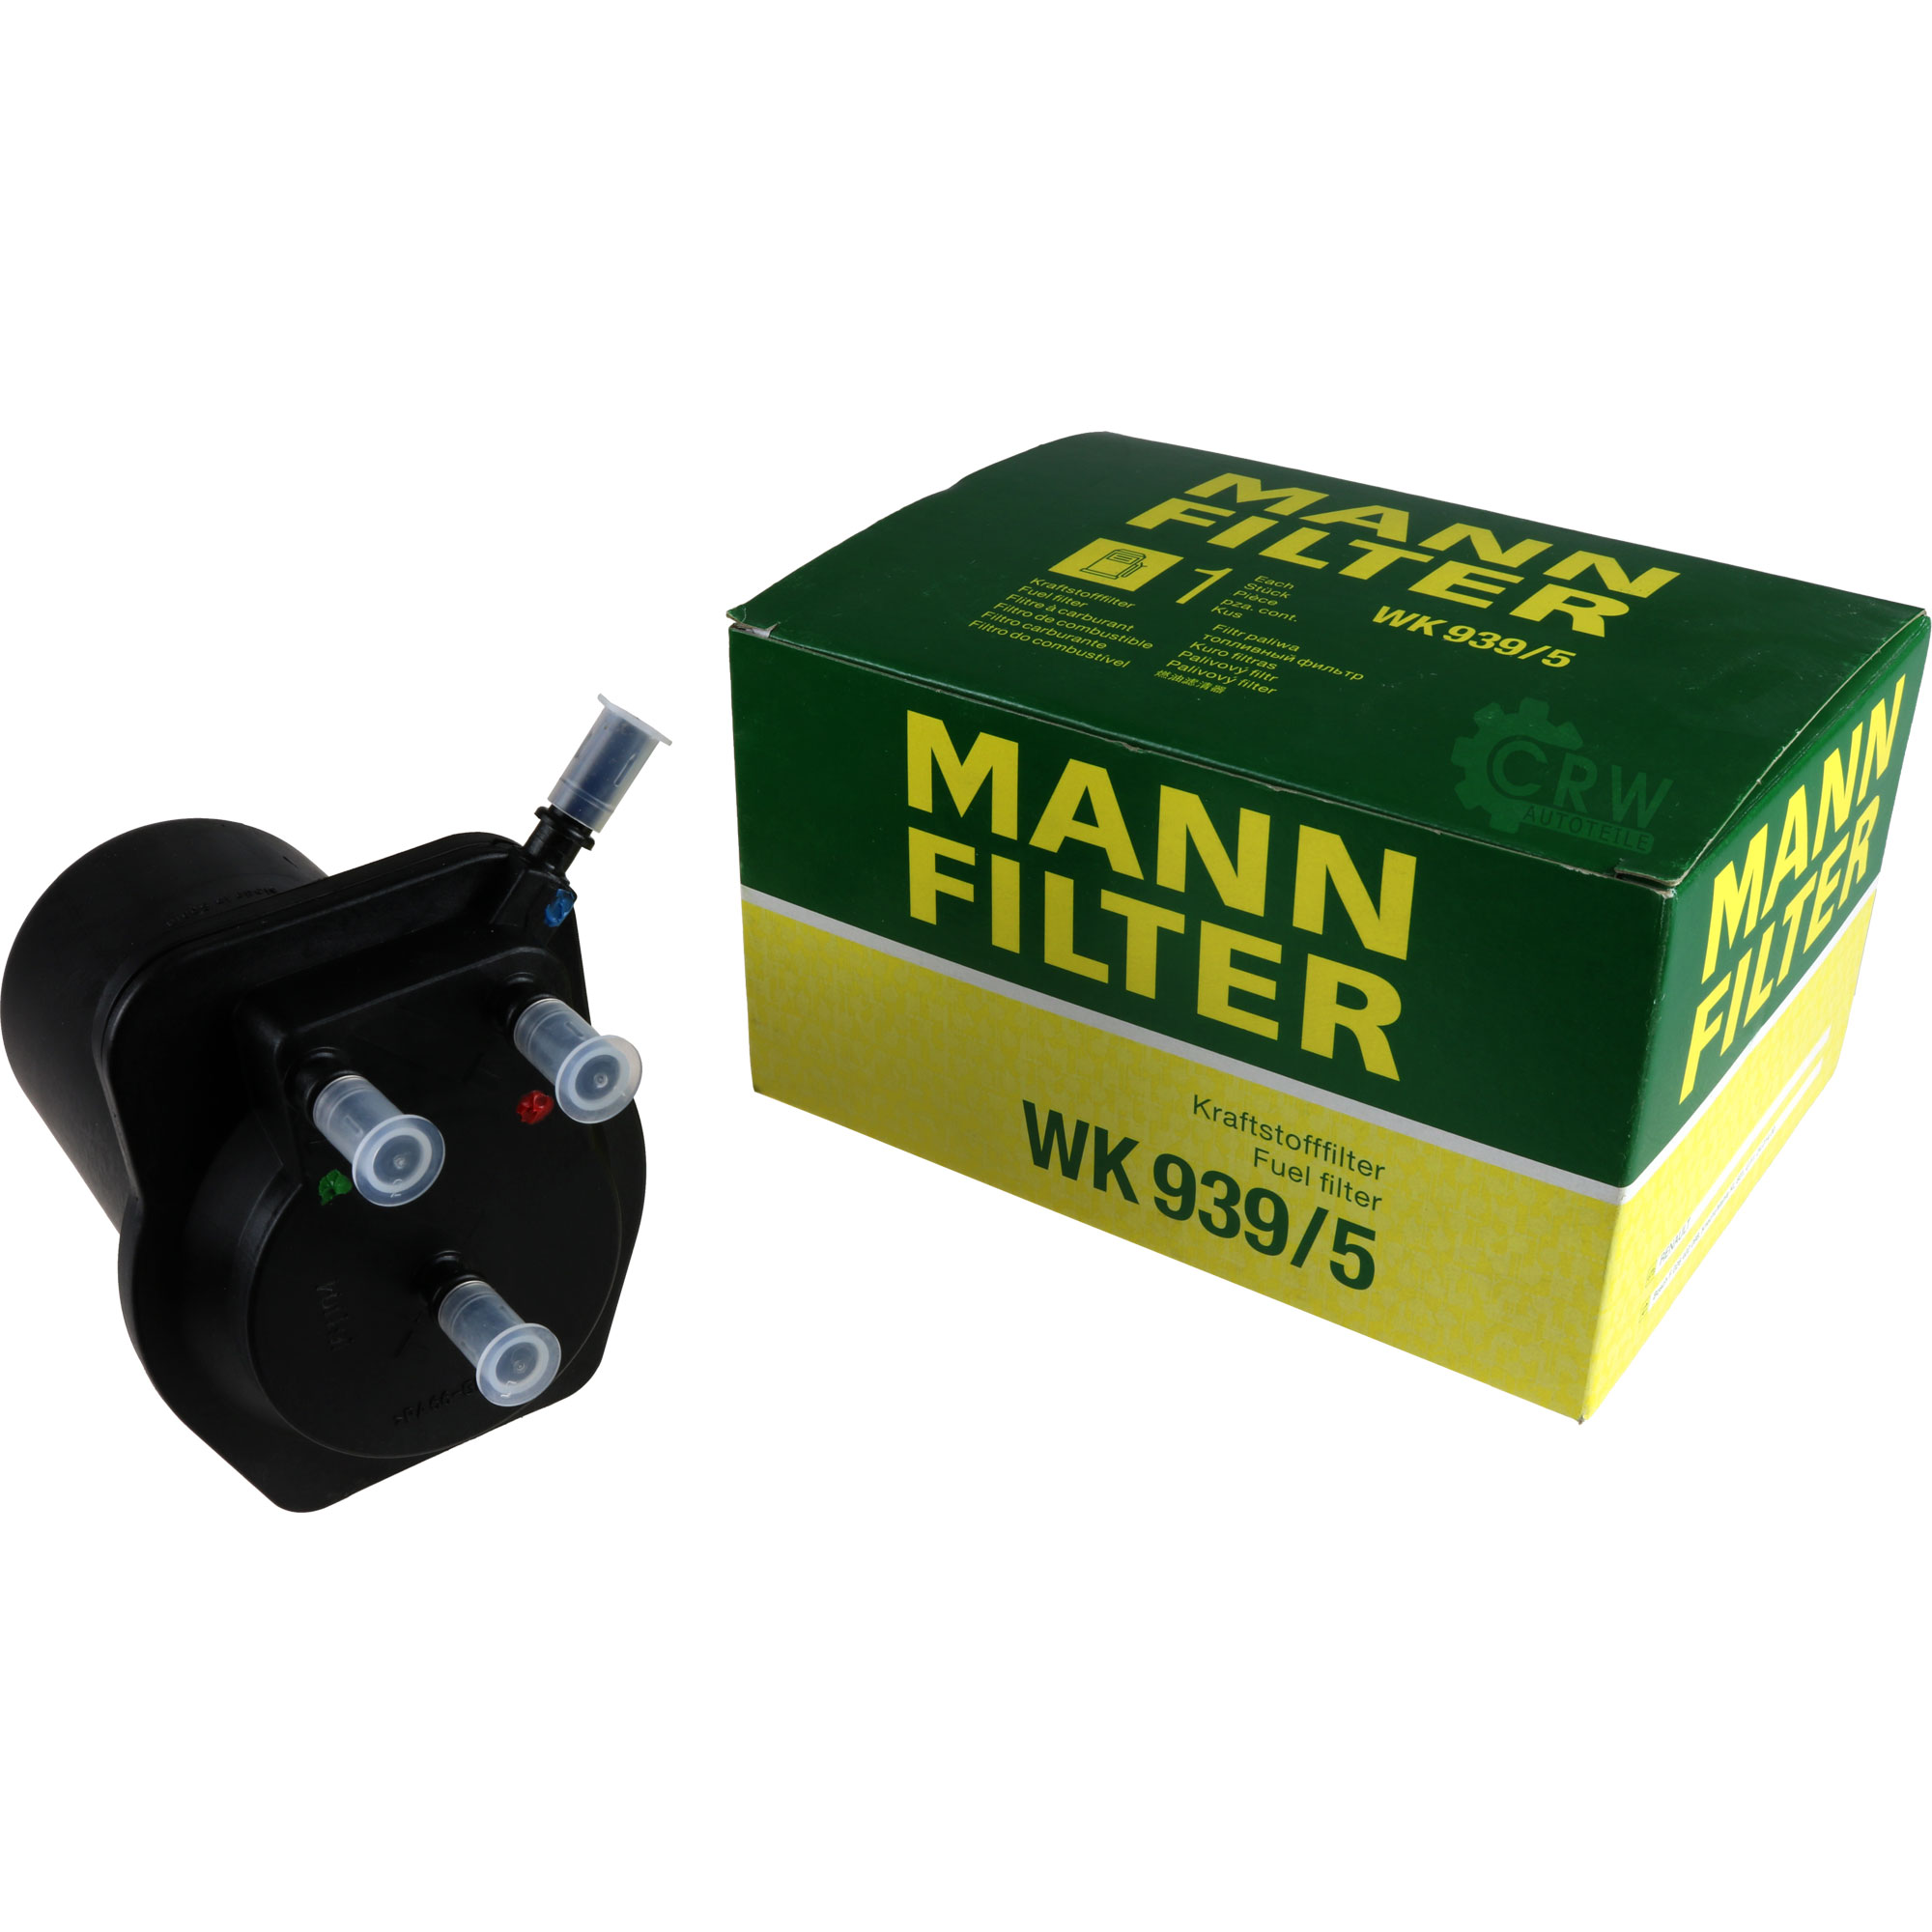 MANN-FILTER Kraftstofffilter WK 939/5 Fuel Filter